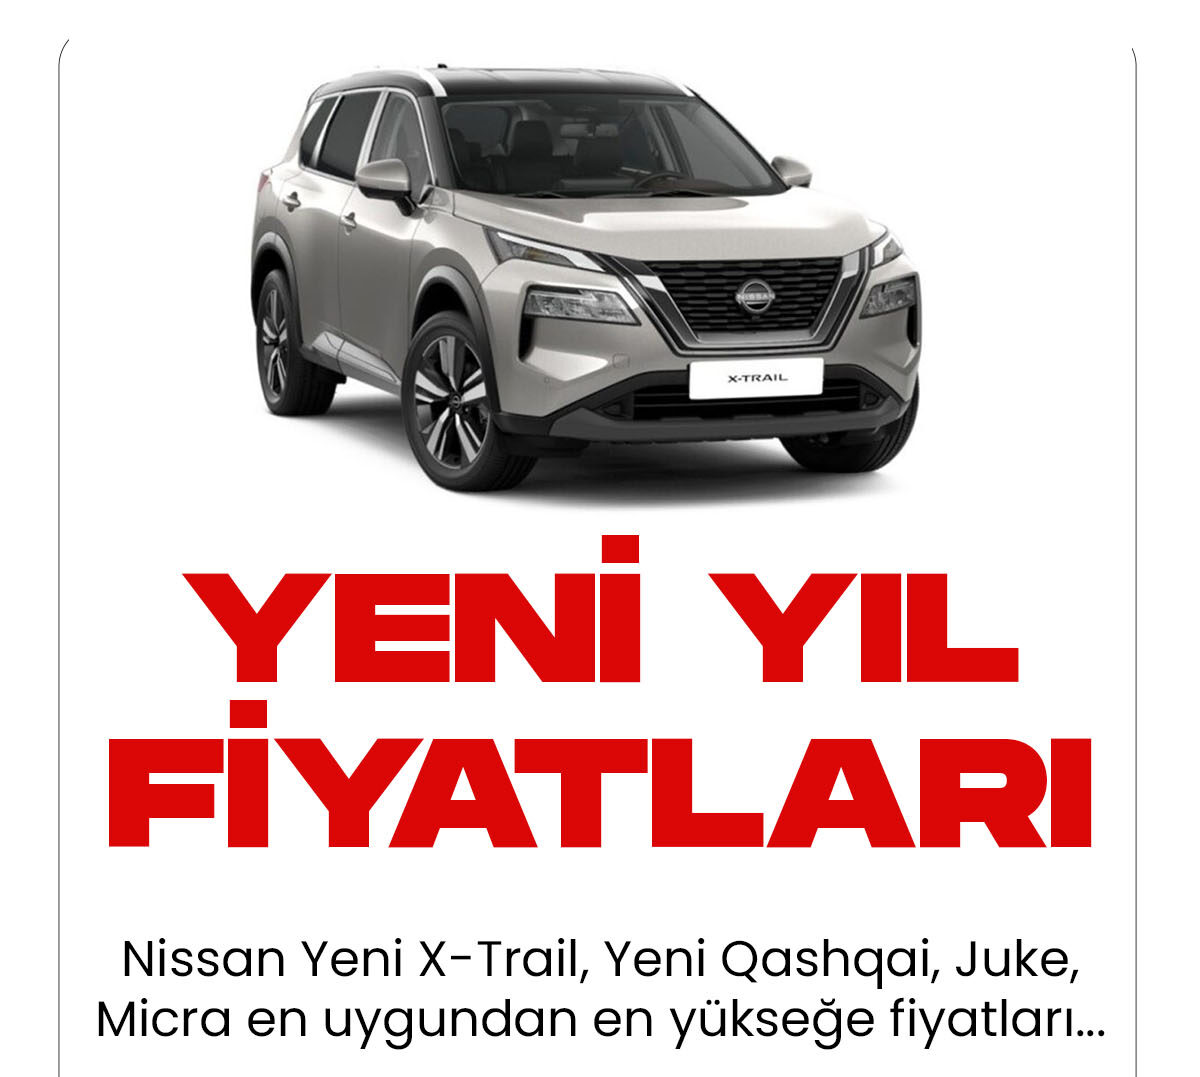 Nissan Ocak fiyat listesi yayımlandı. Kaliteli araç markaları arasında yer alan Nissan, yeni yıl araç fiyat listesini güncelledi.